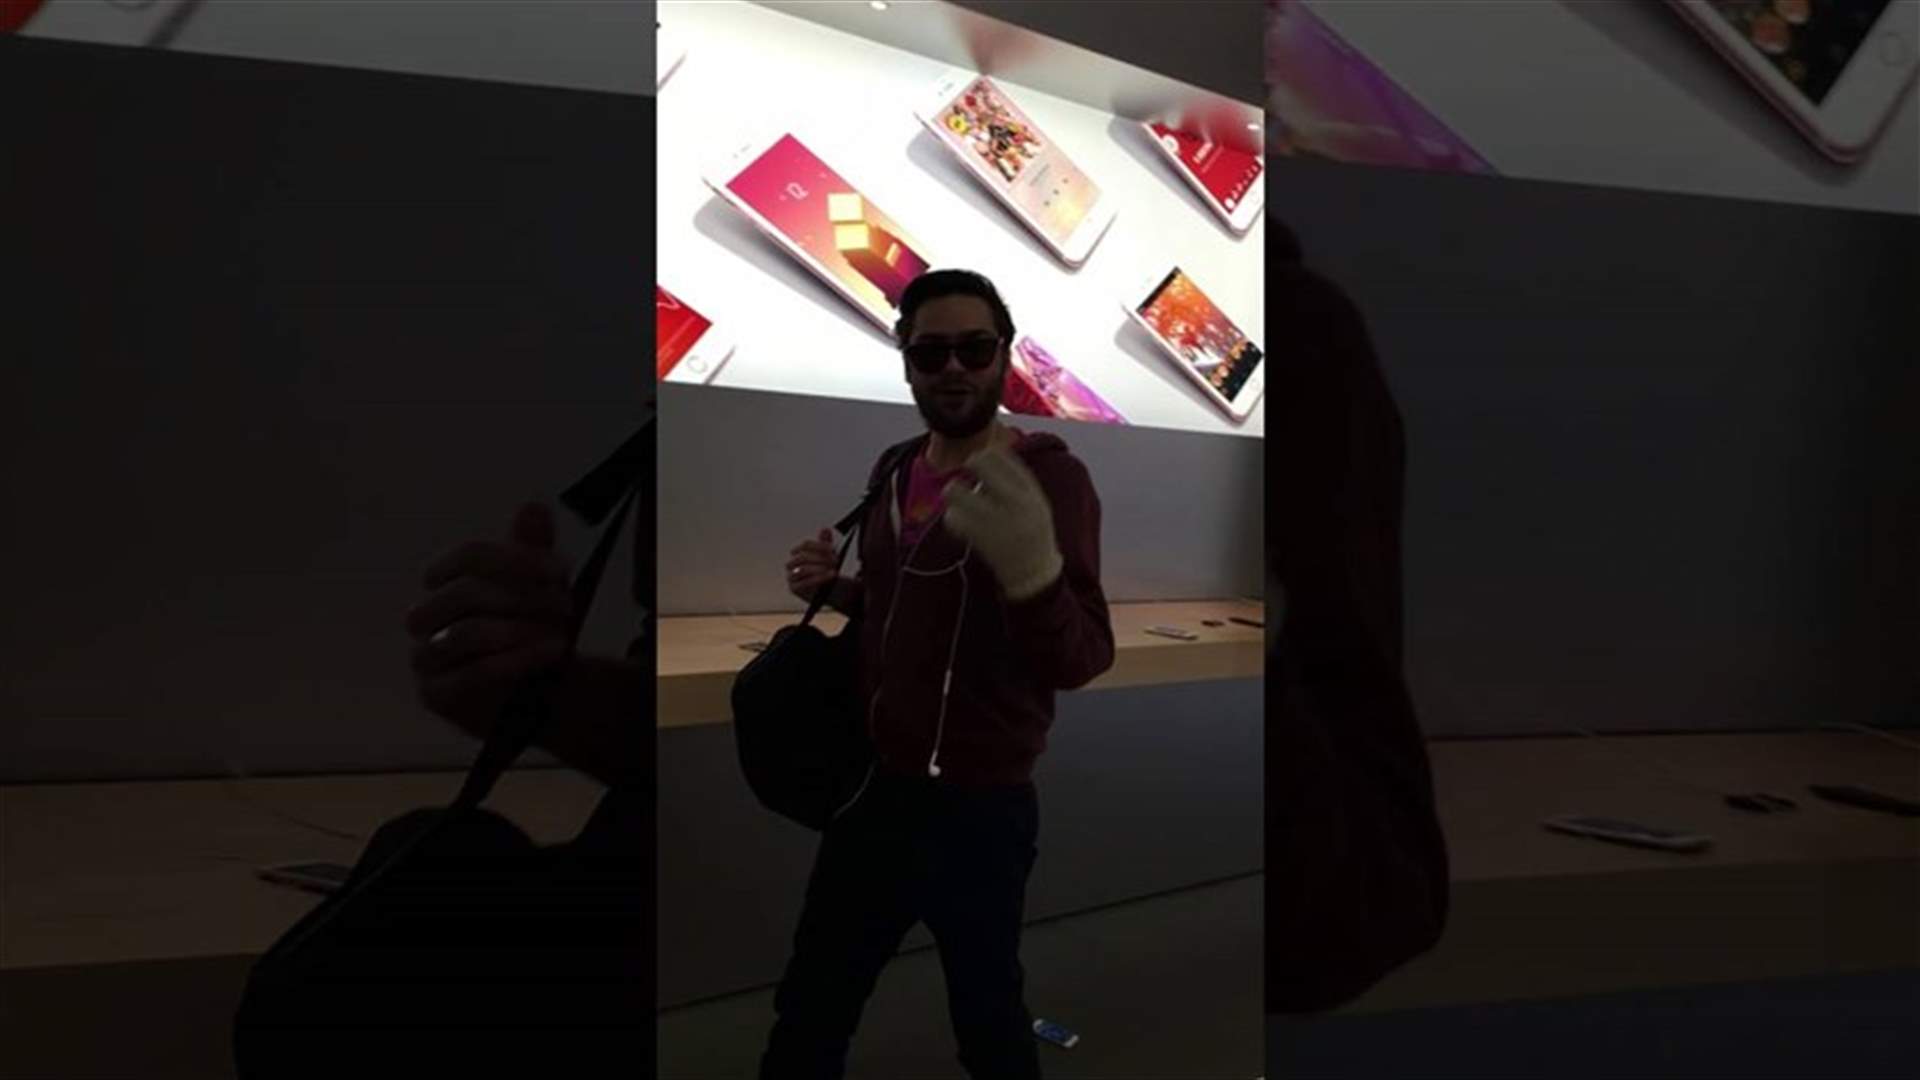 بالفيديو: رجل غاضب يحطم أجهزة أيفون داخل متجر!